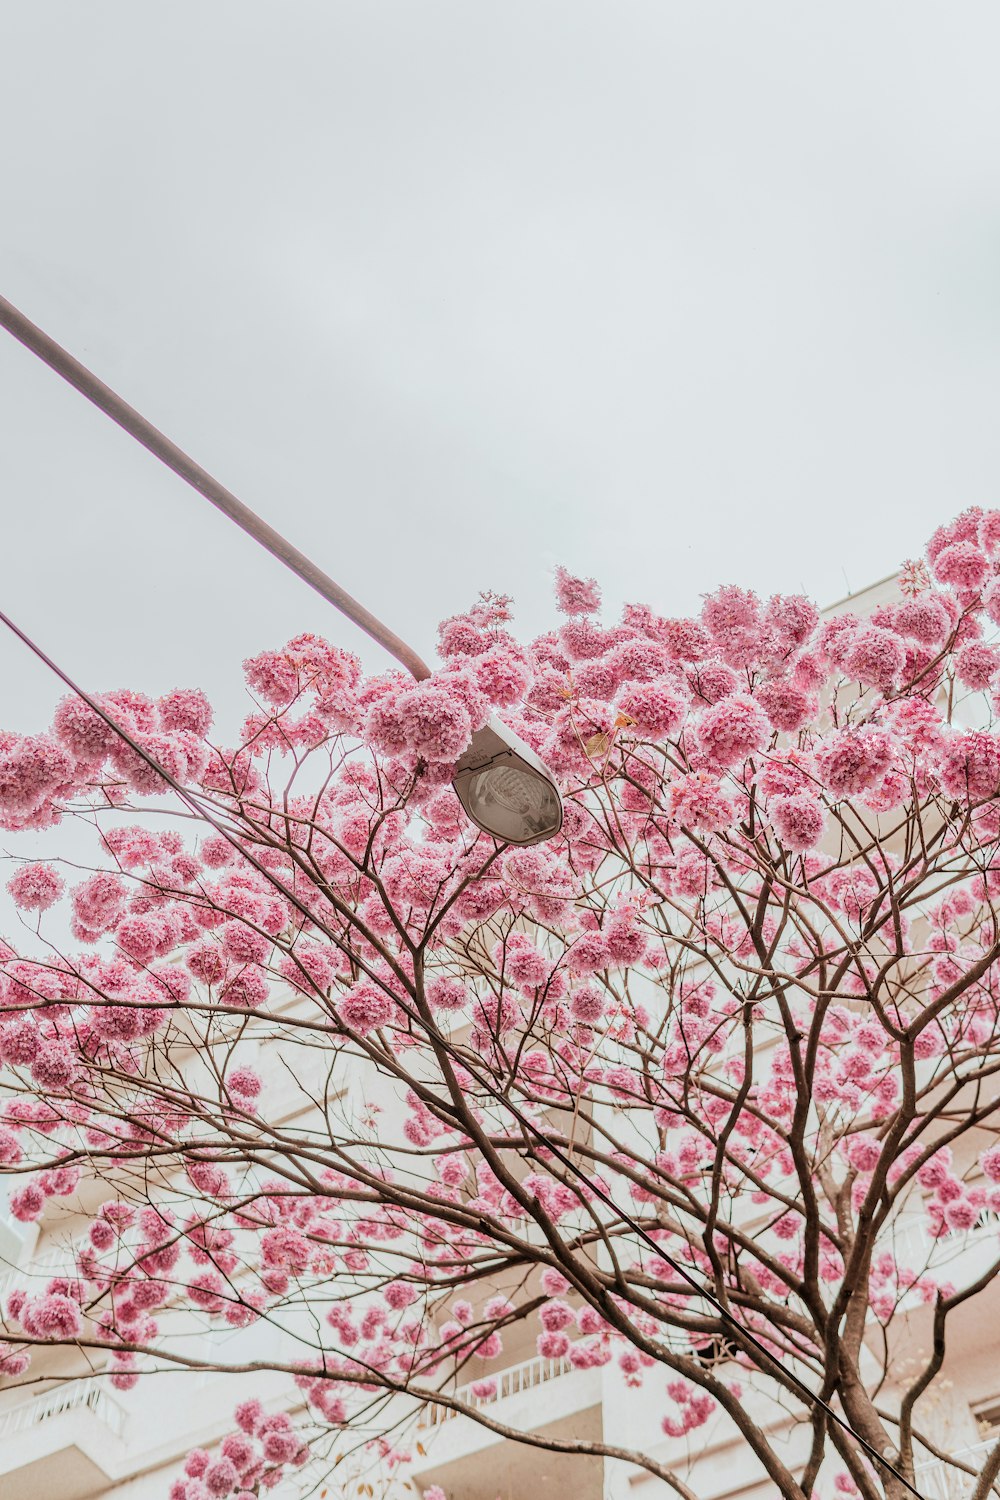 cherry blossom tree under white sky